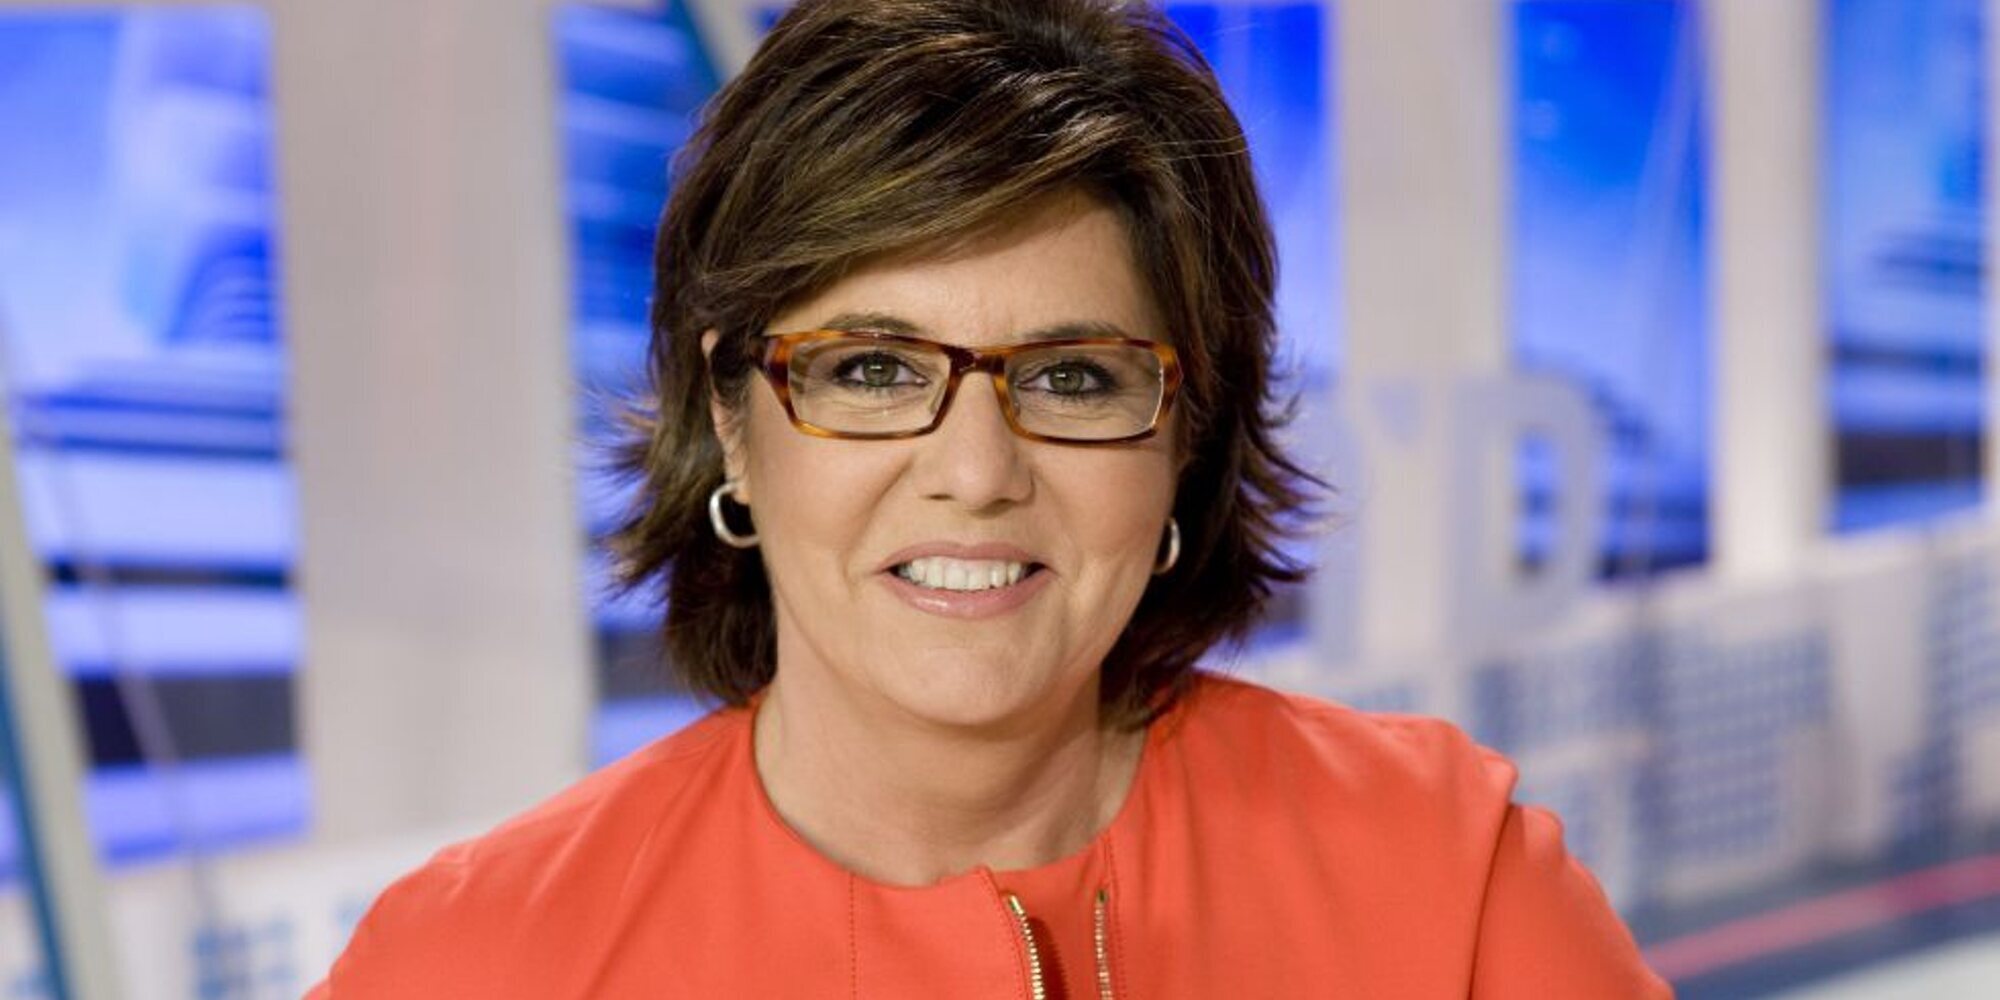 La periodista María Escario anuncia que padece cáncer de mama